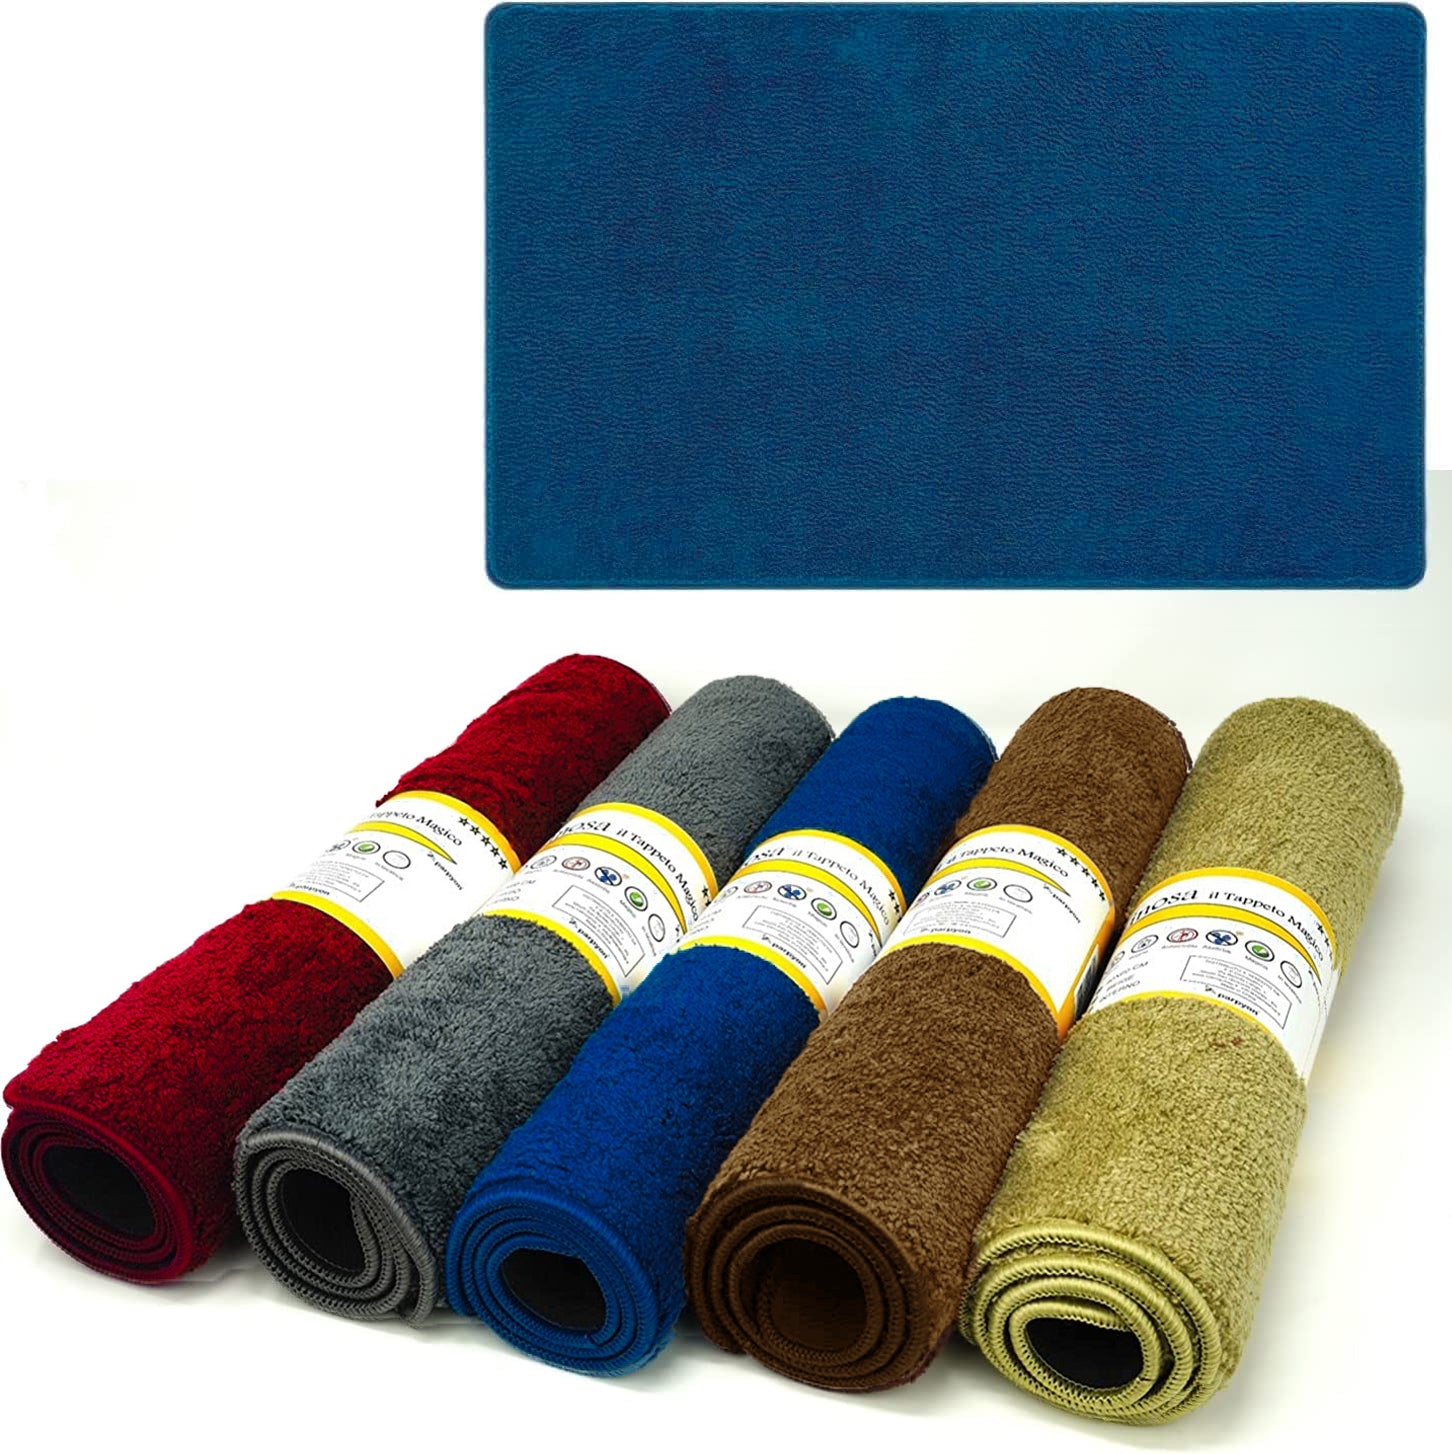 Tappeto bagno antiscivolo Linosa asciugapasso ingresso tappeto MAGICO in microfibra #colore_azzurro